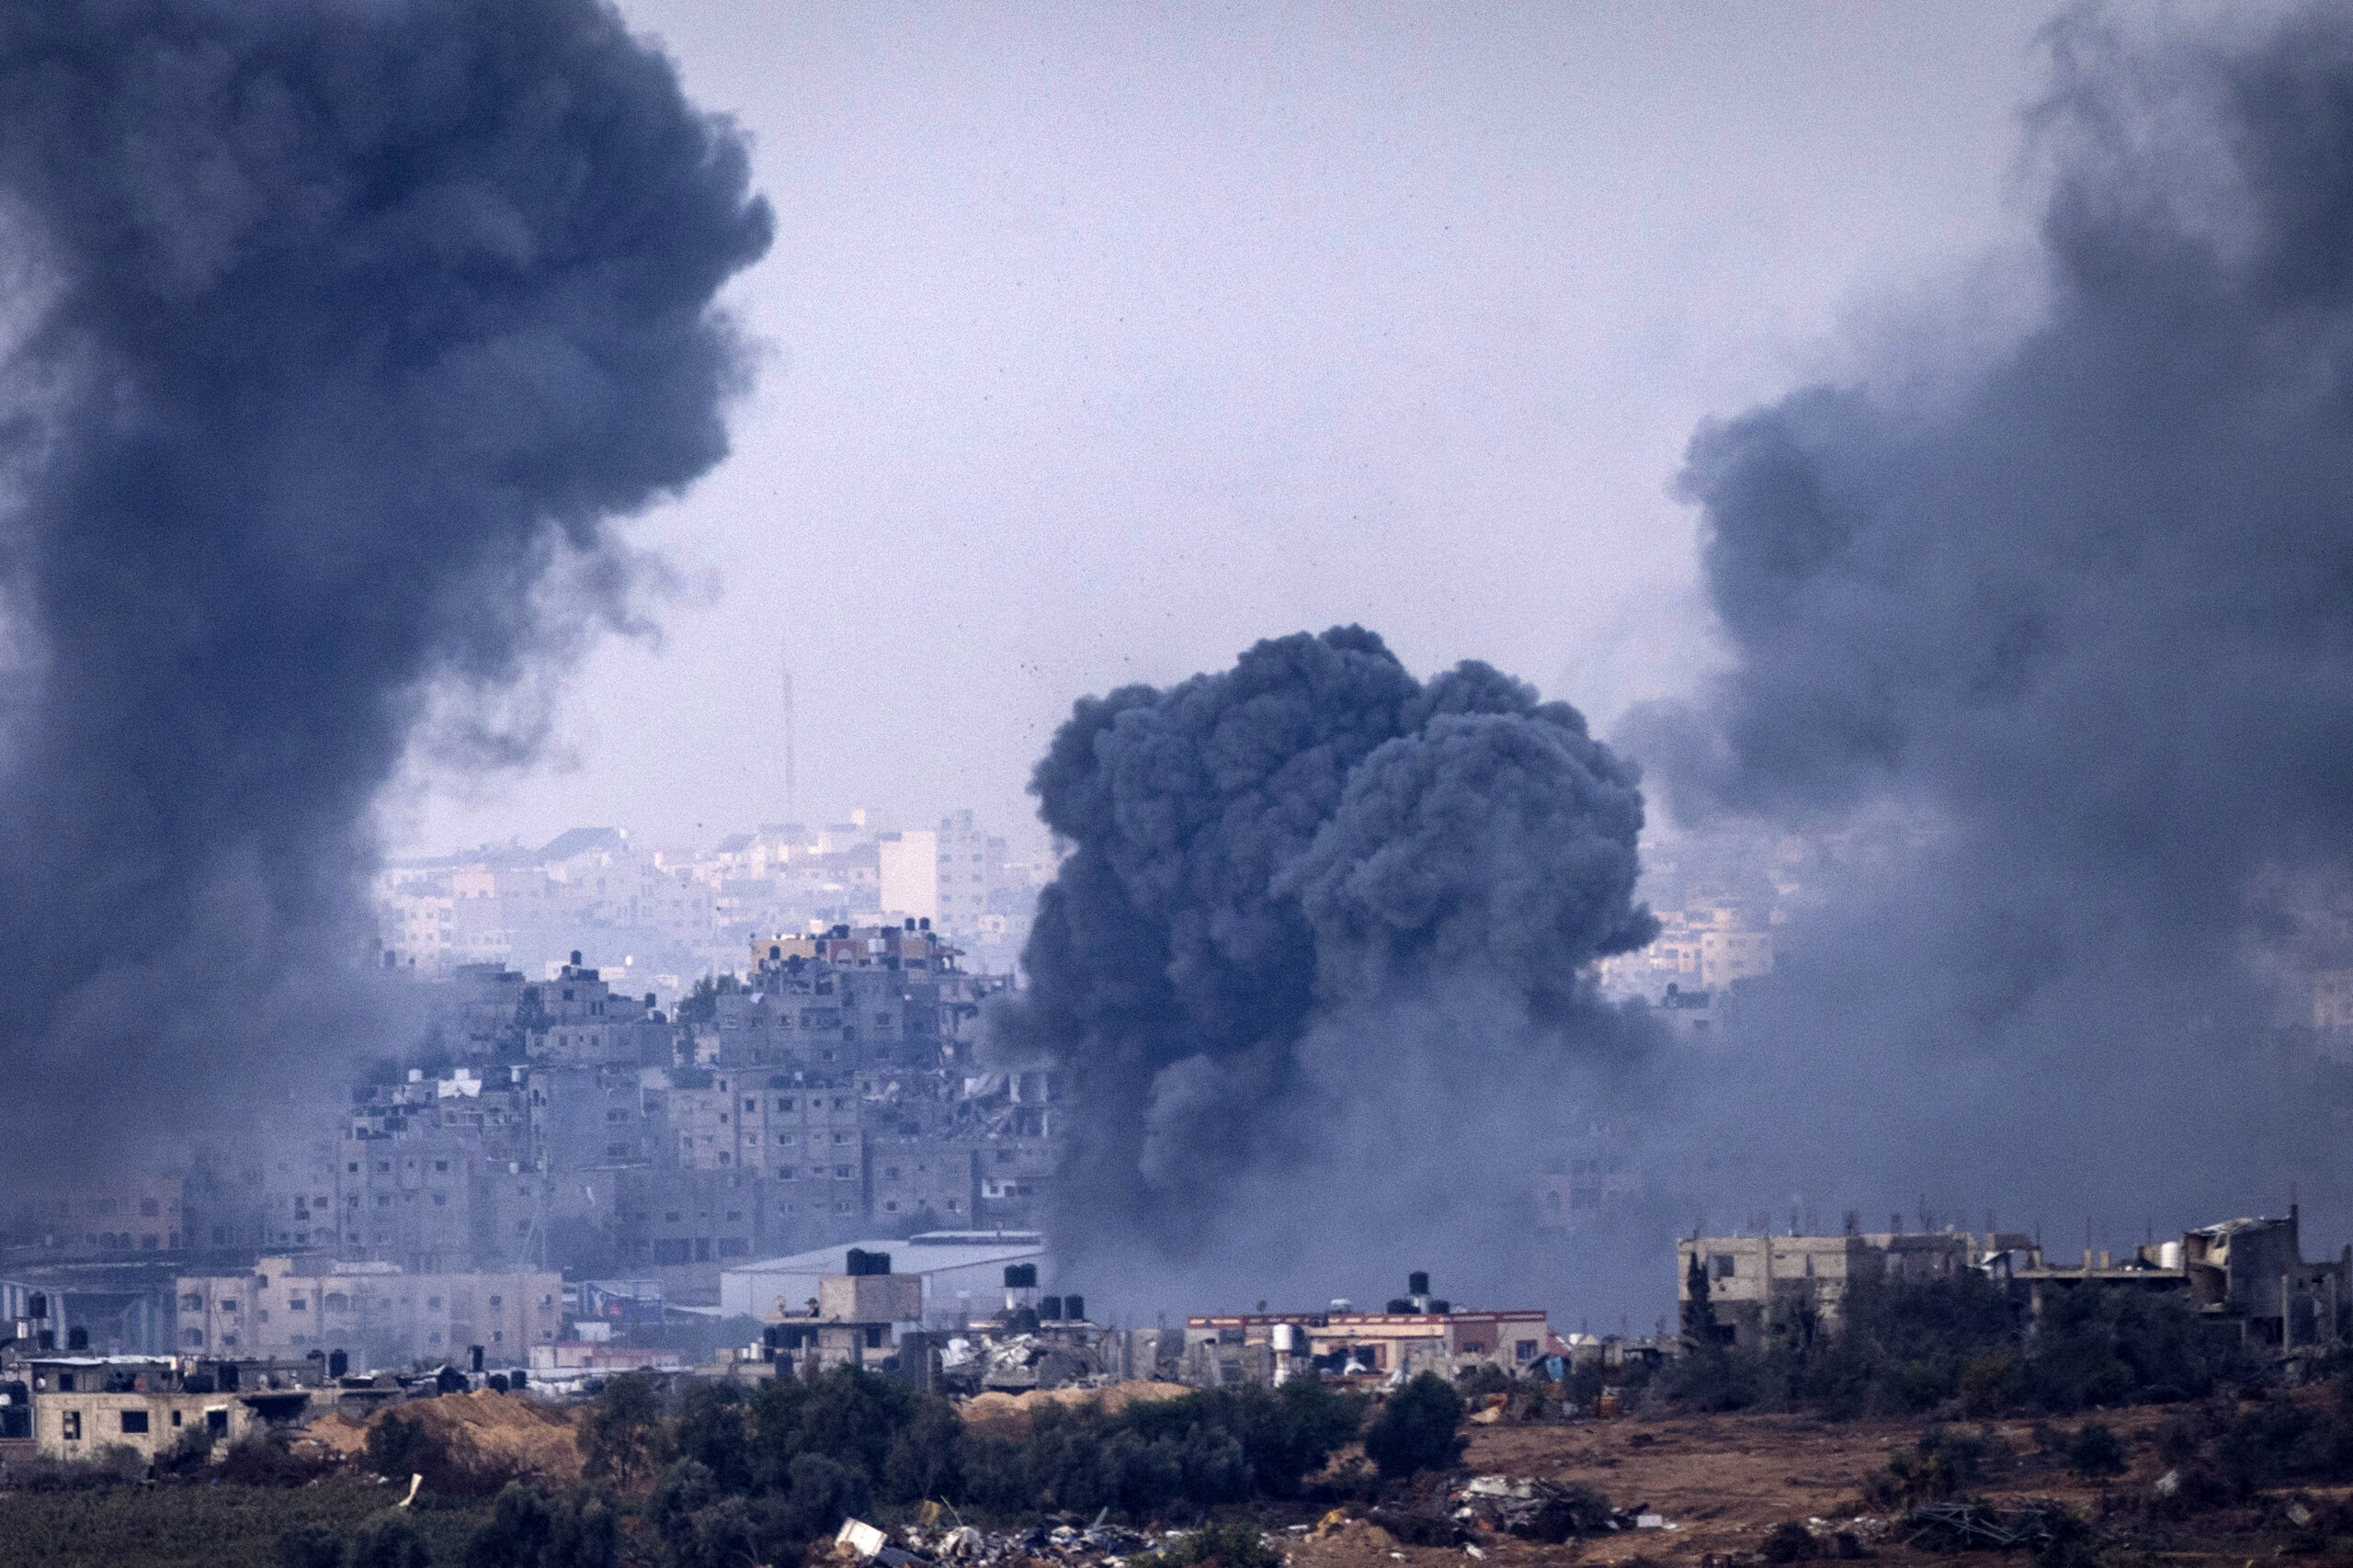 Η ΕΡΤ στην εμπόλεμη ζώνη: Πάνω από 100 μέλη της Χαμάς έχουν προσαχθεί και ανακρίνονται στο Ισραήλ, λέει η Σιν Μπετ